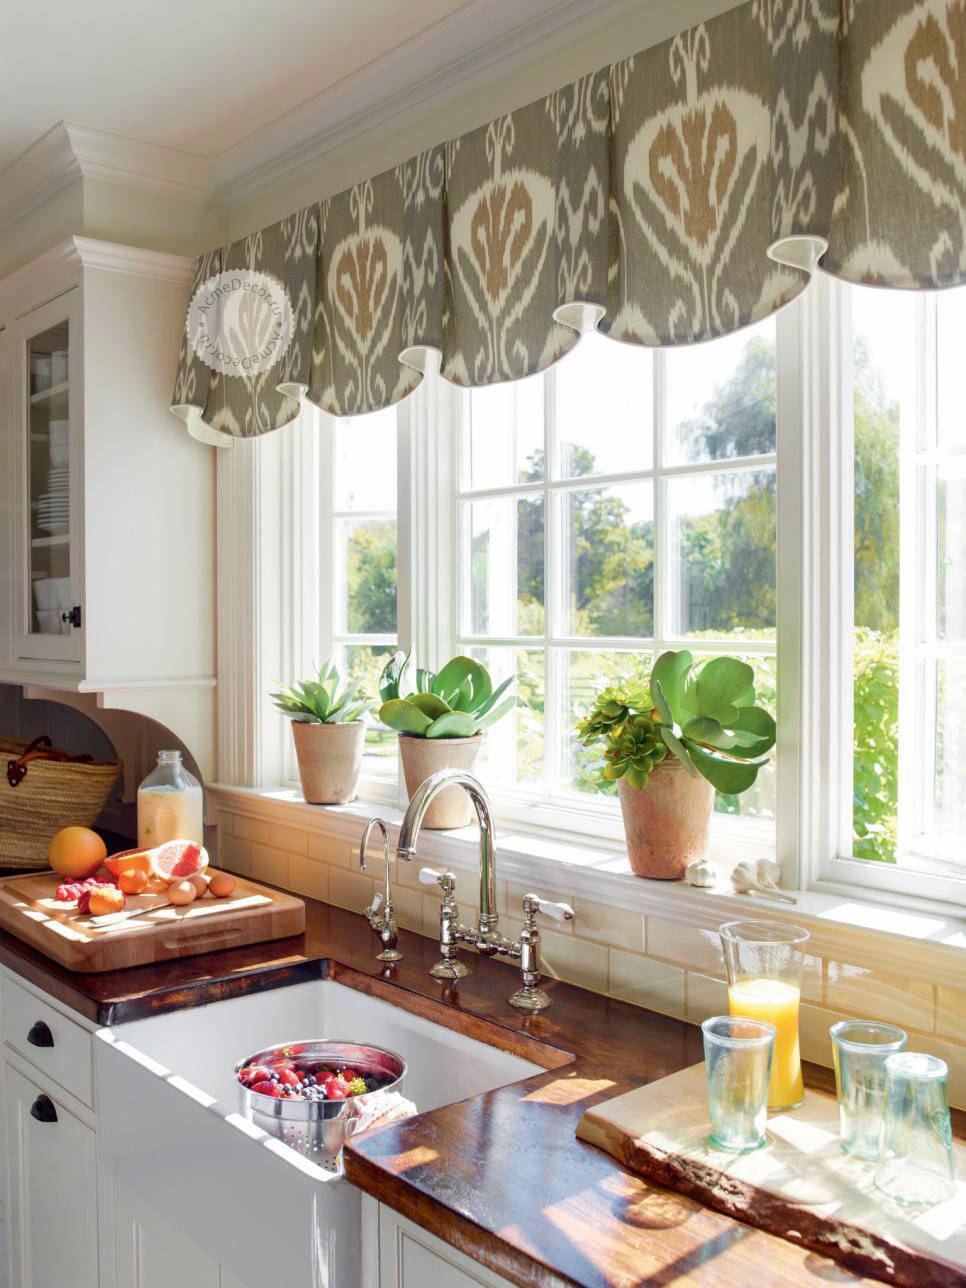 Занавески на кухню: фото примеры дизайна занавесок в современном стиле